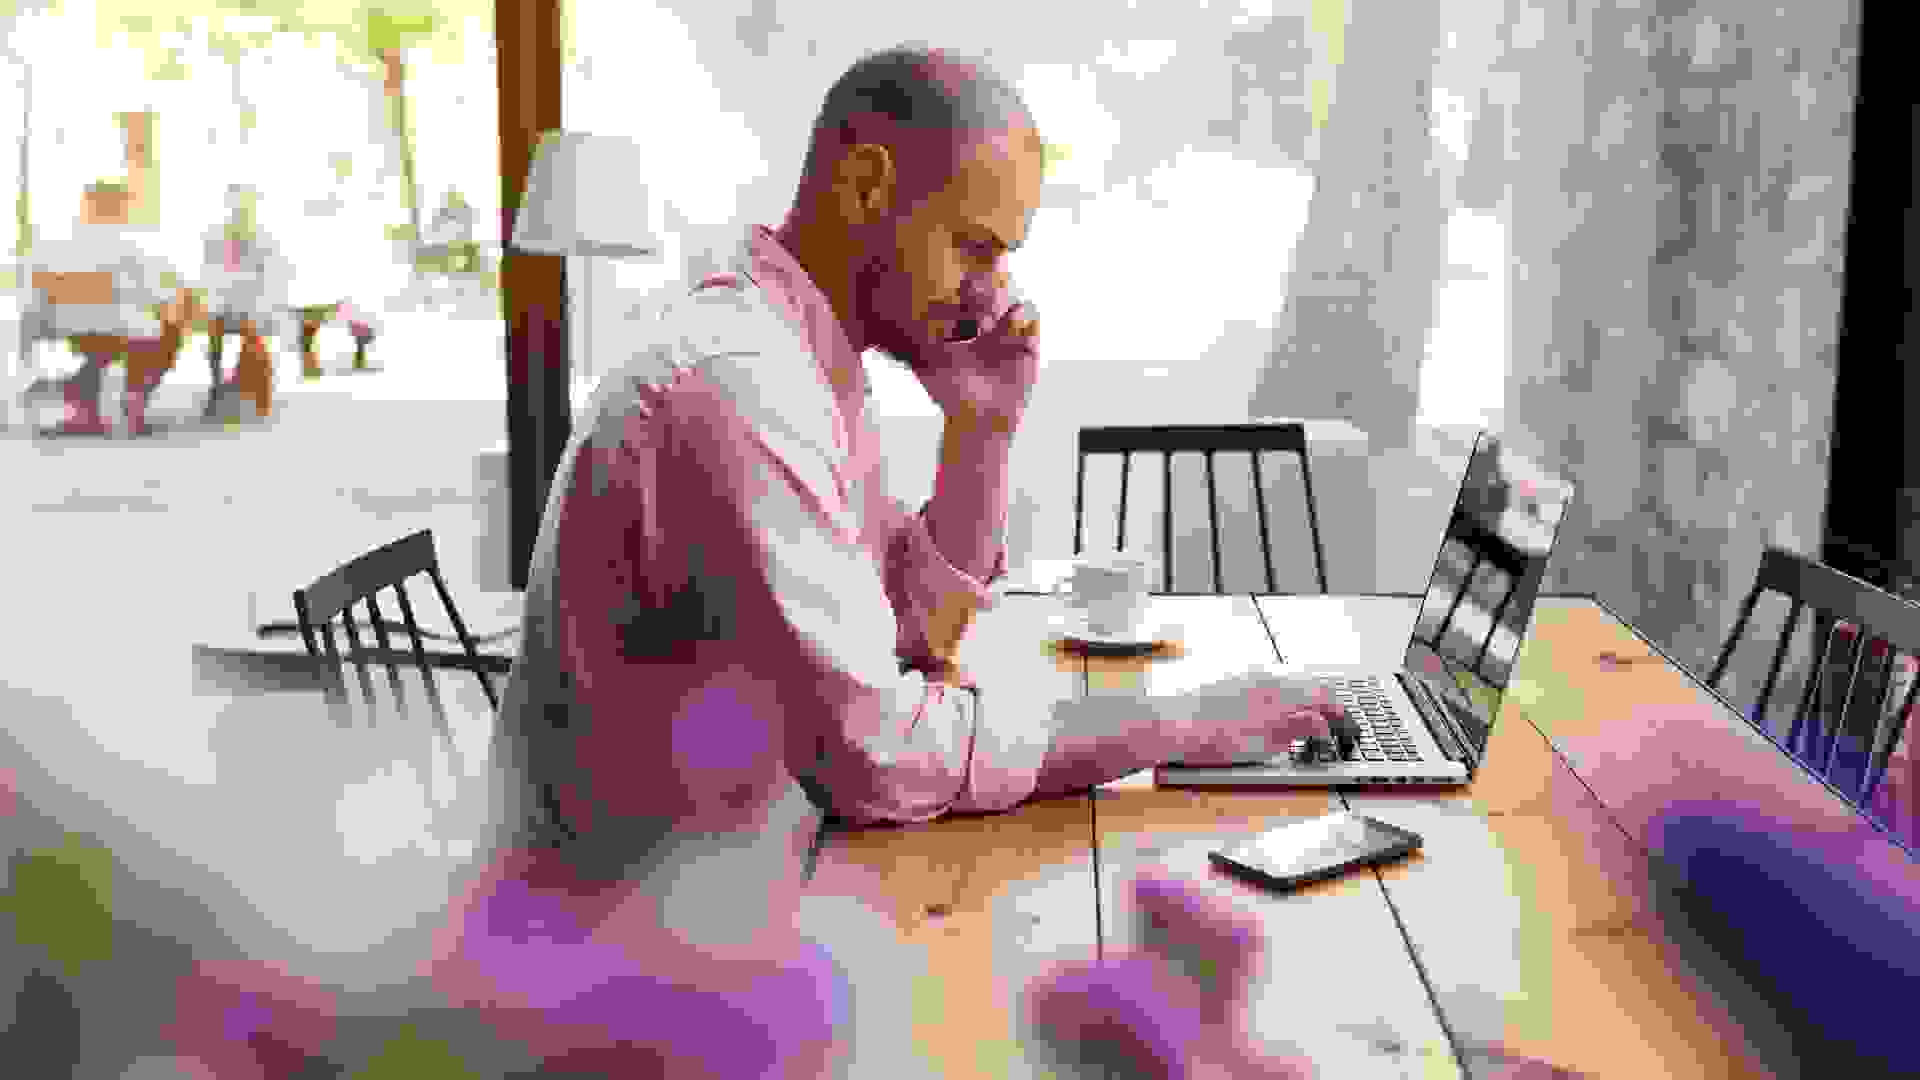 Man working on laptop at cafe